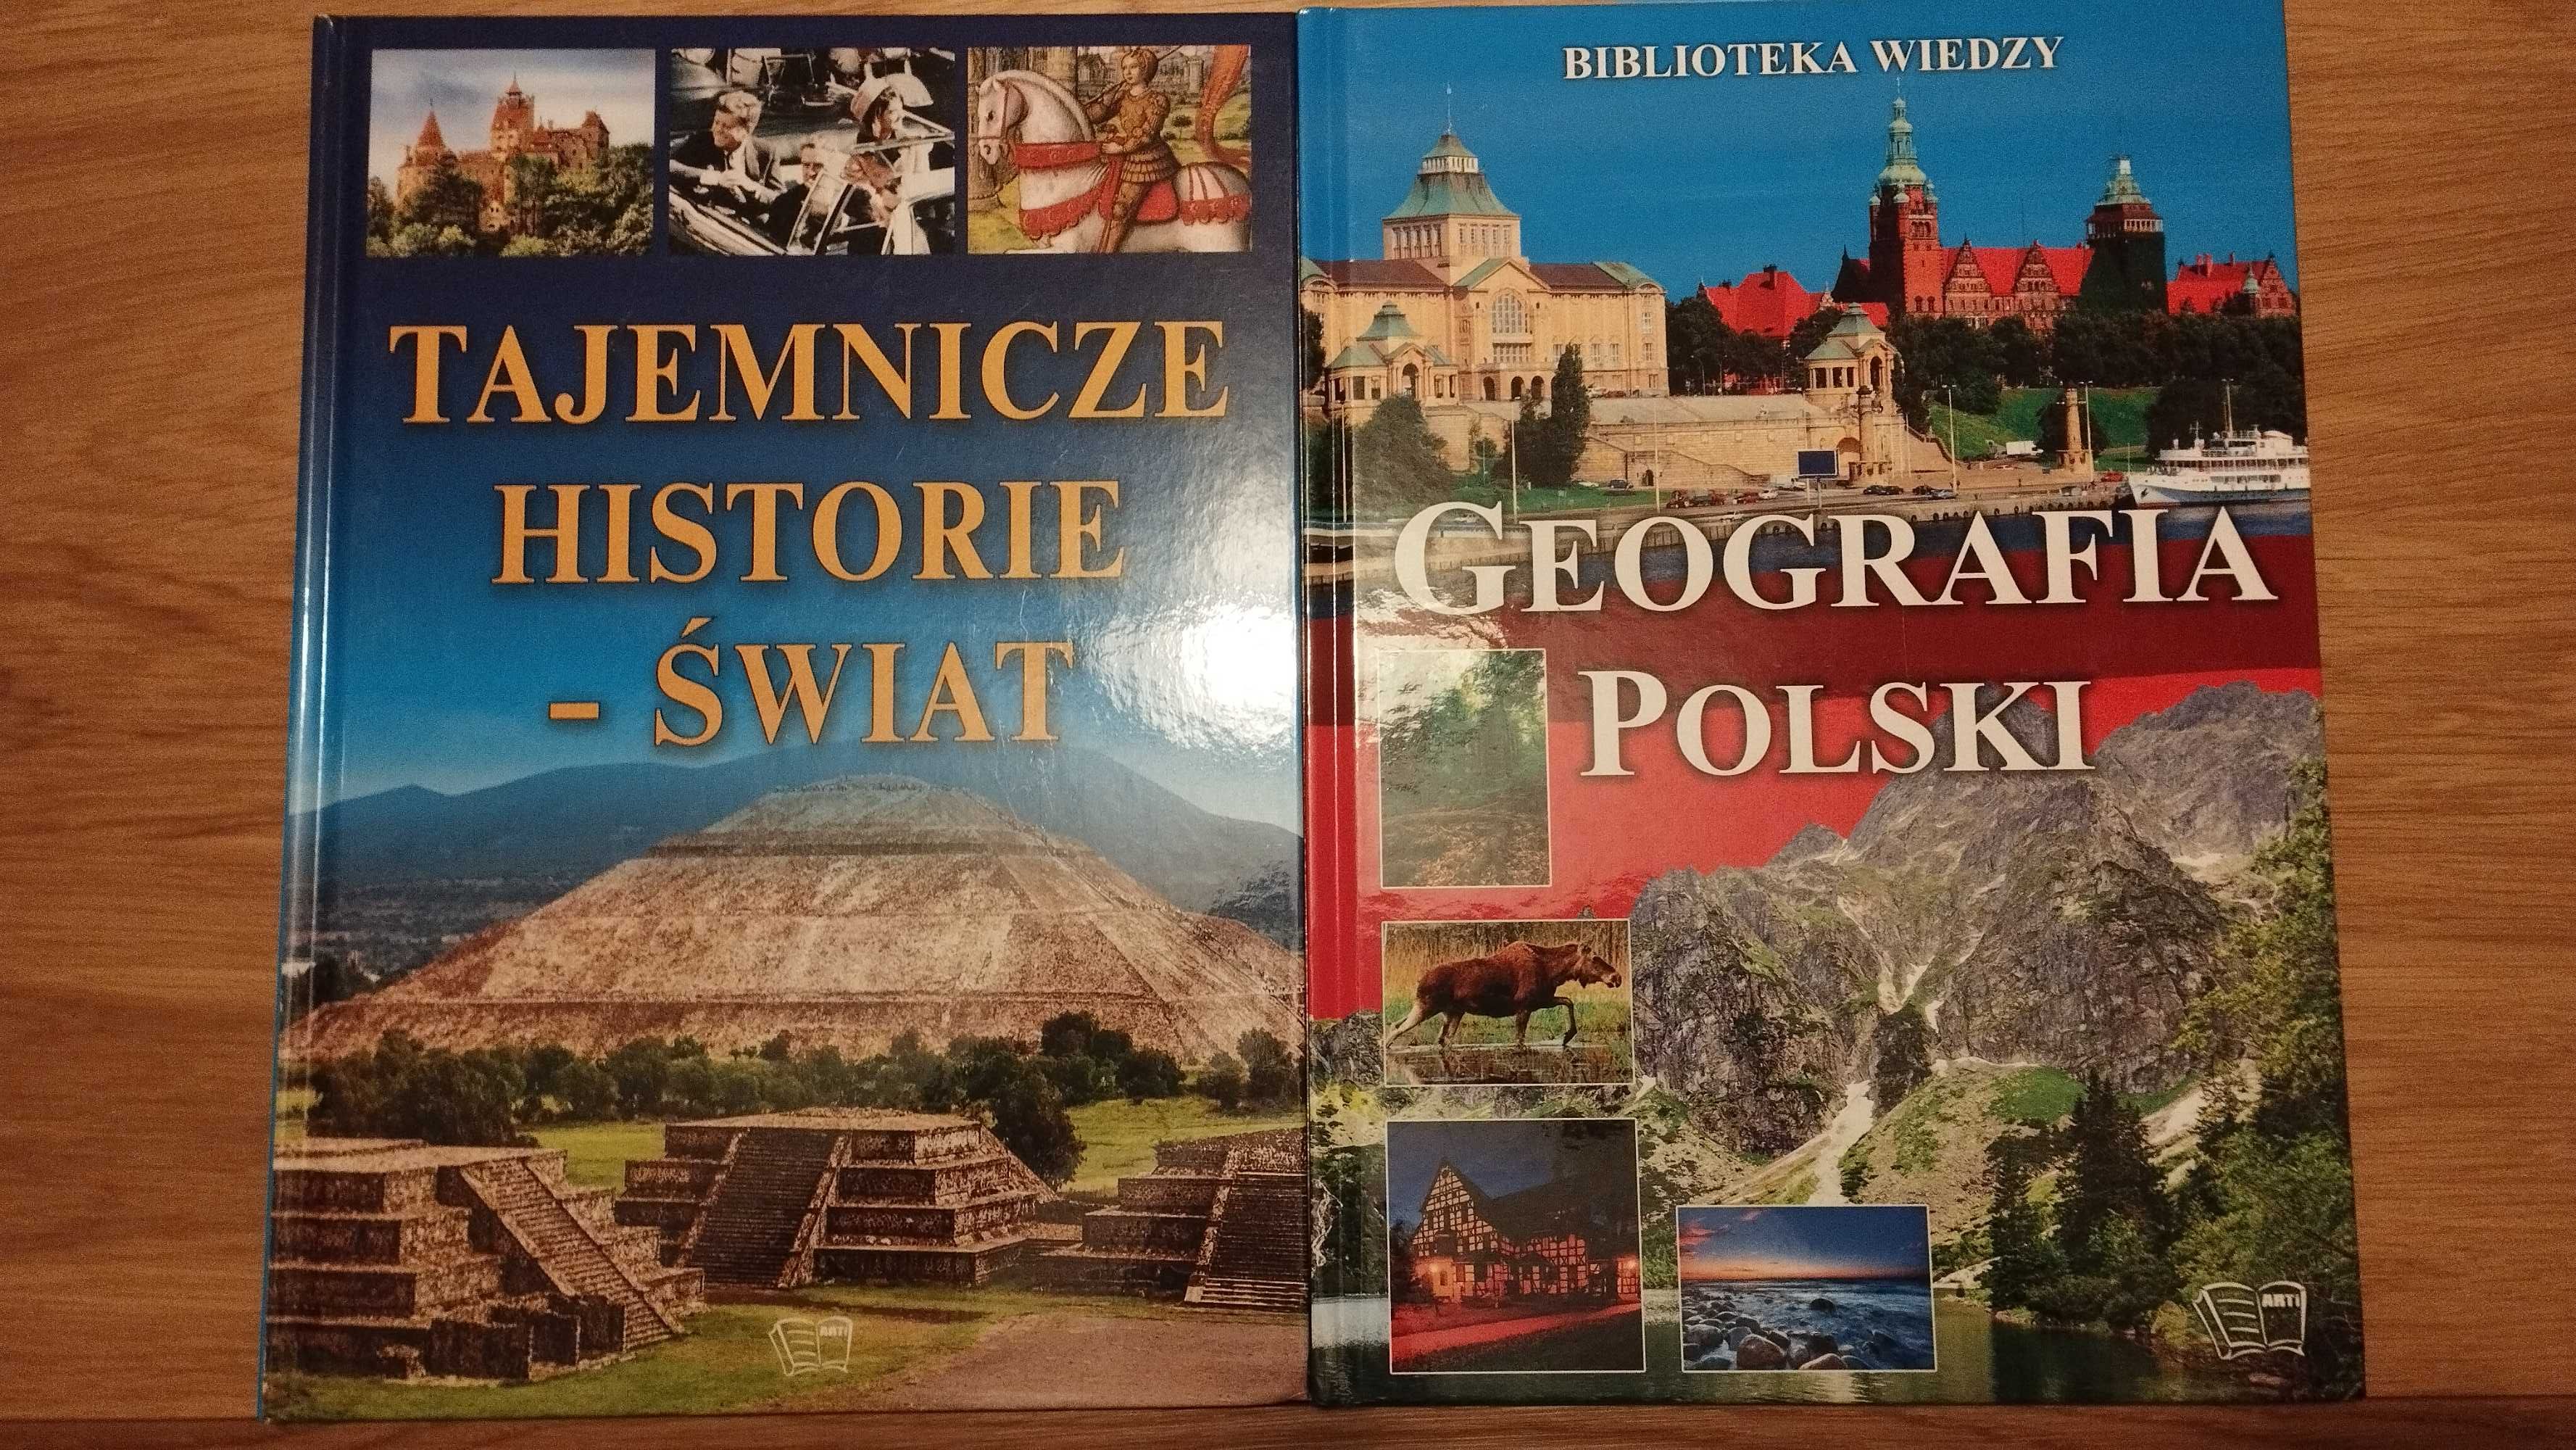 Książka album "Tajemnicze historie - Świat" i "Geografia Polski"